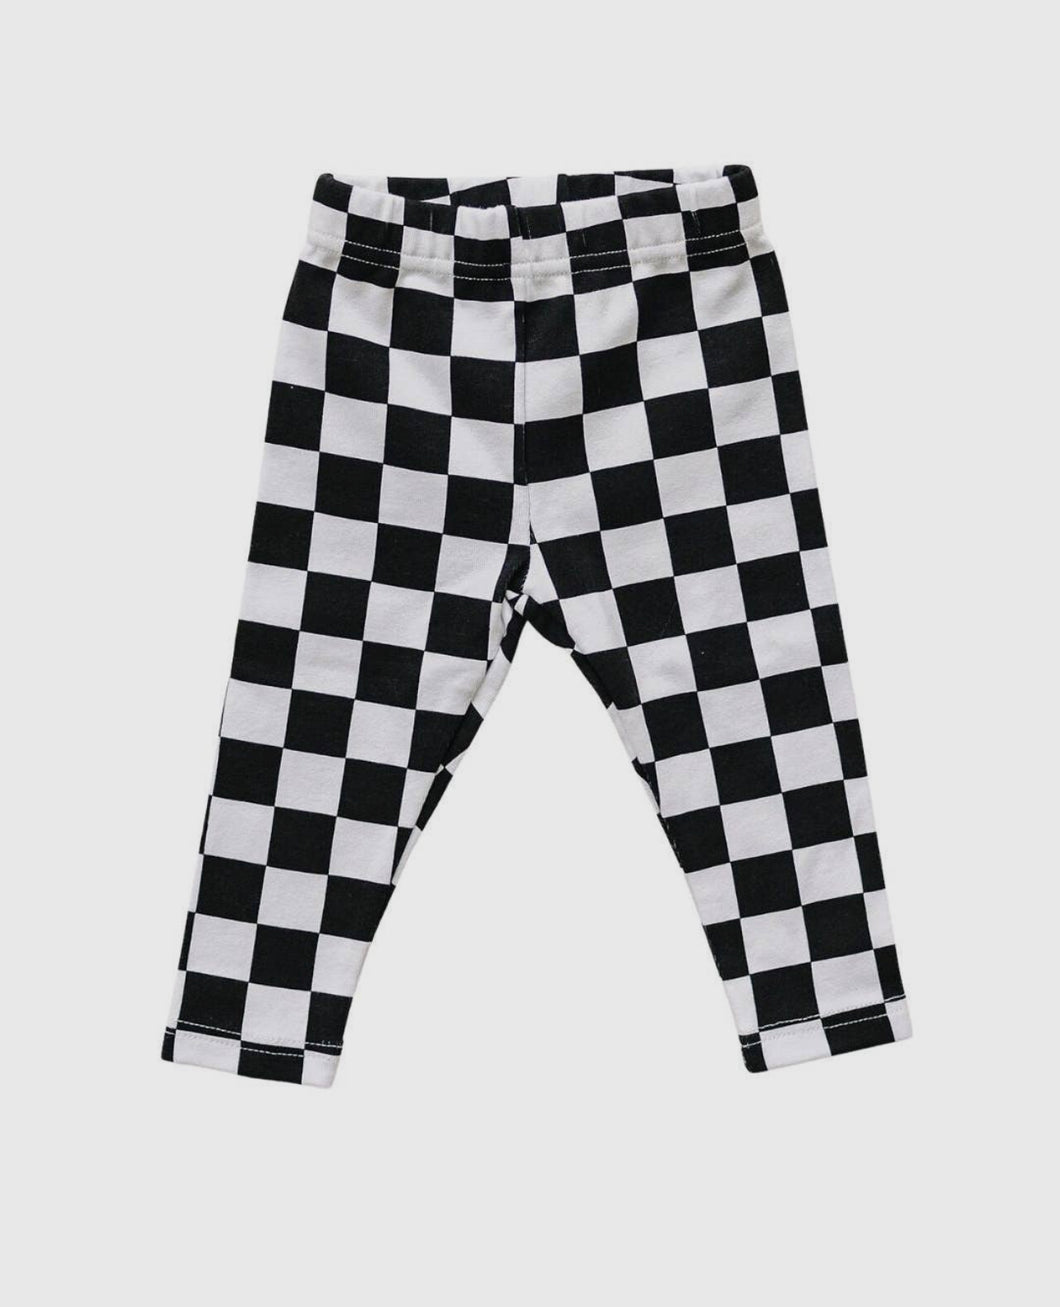 Black Checkered Leggings